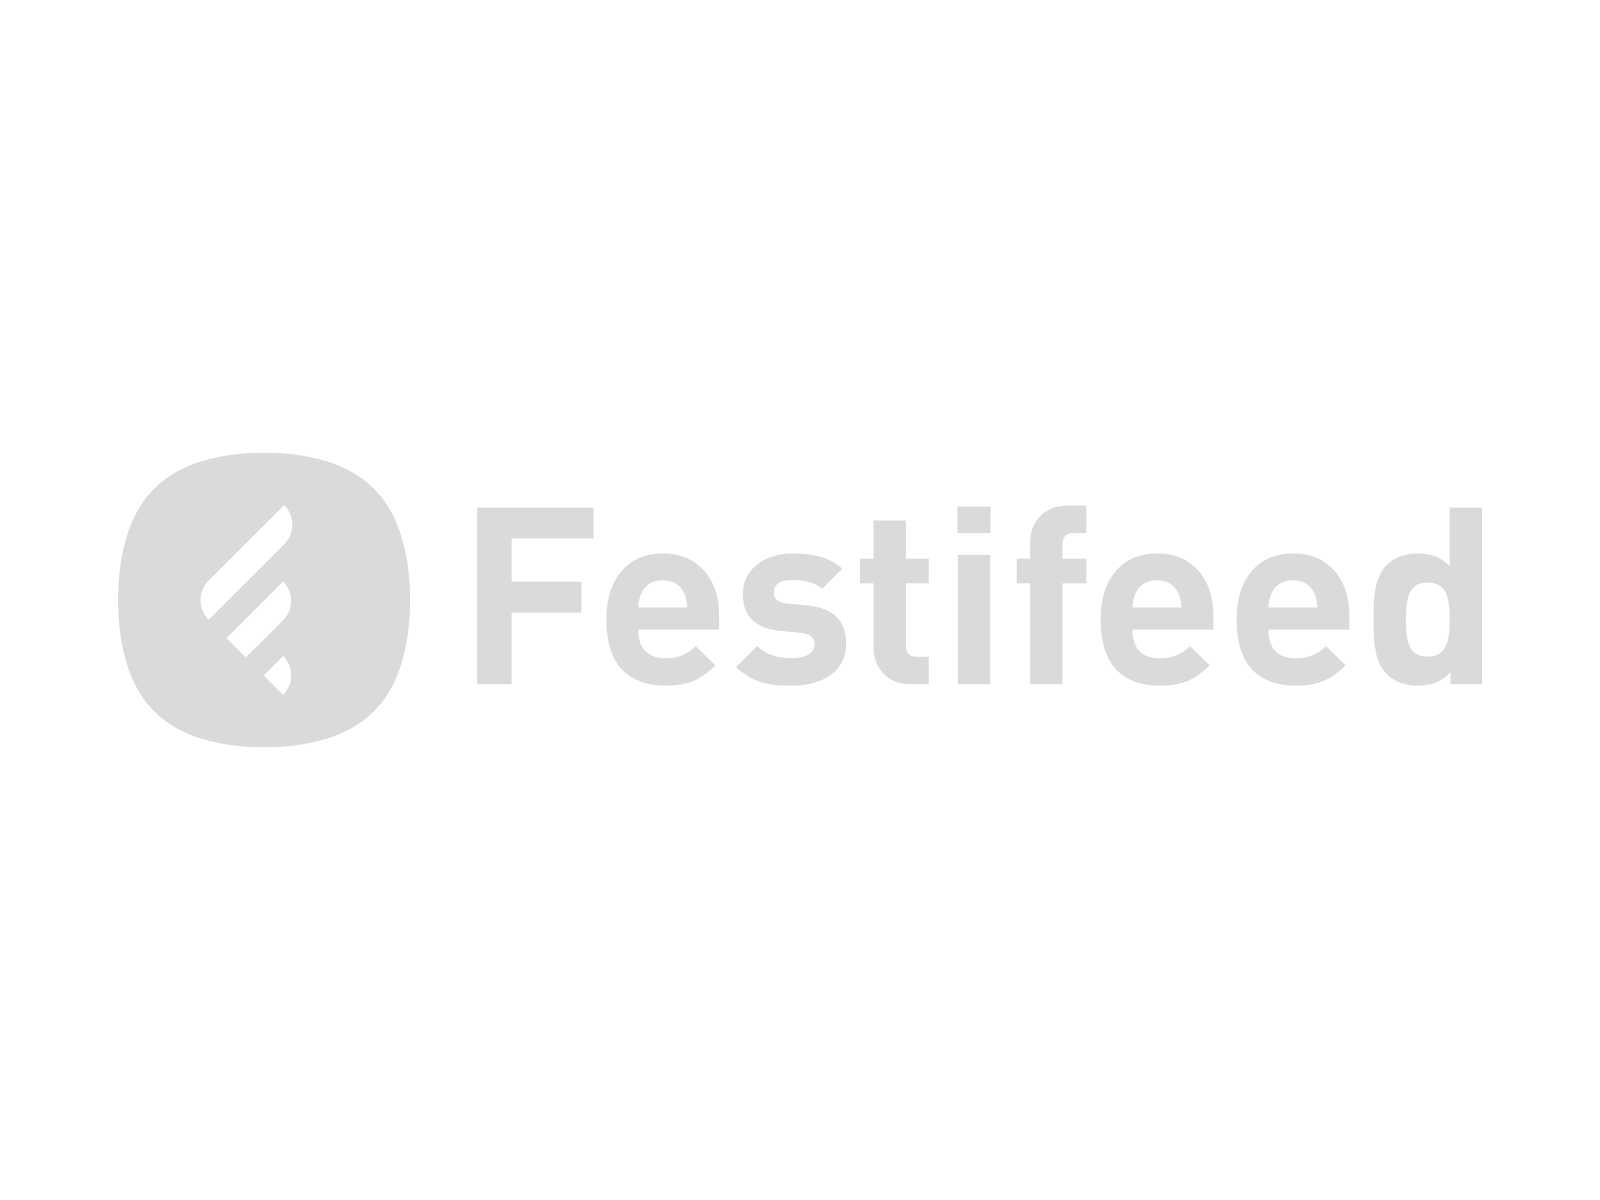 Festifeedlogo-Bneeed-website